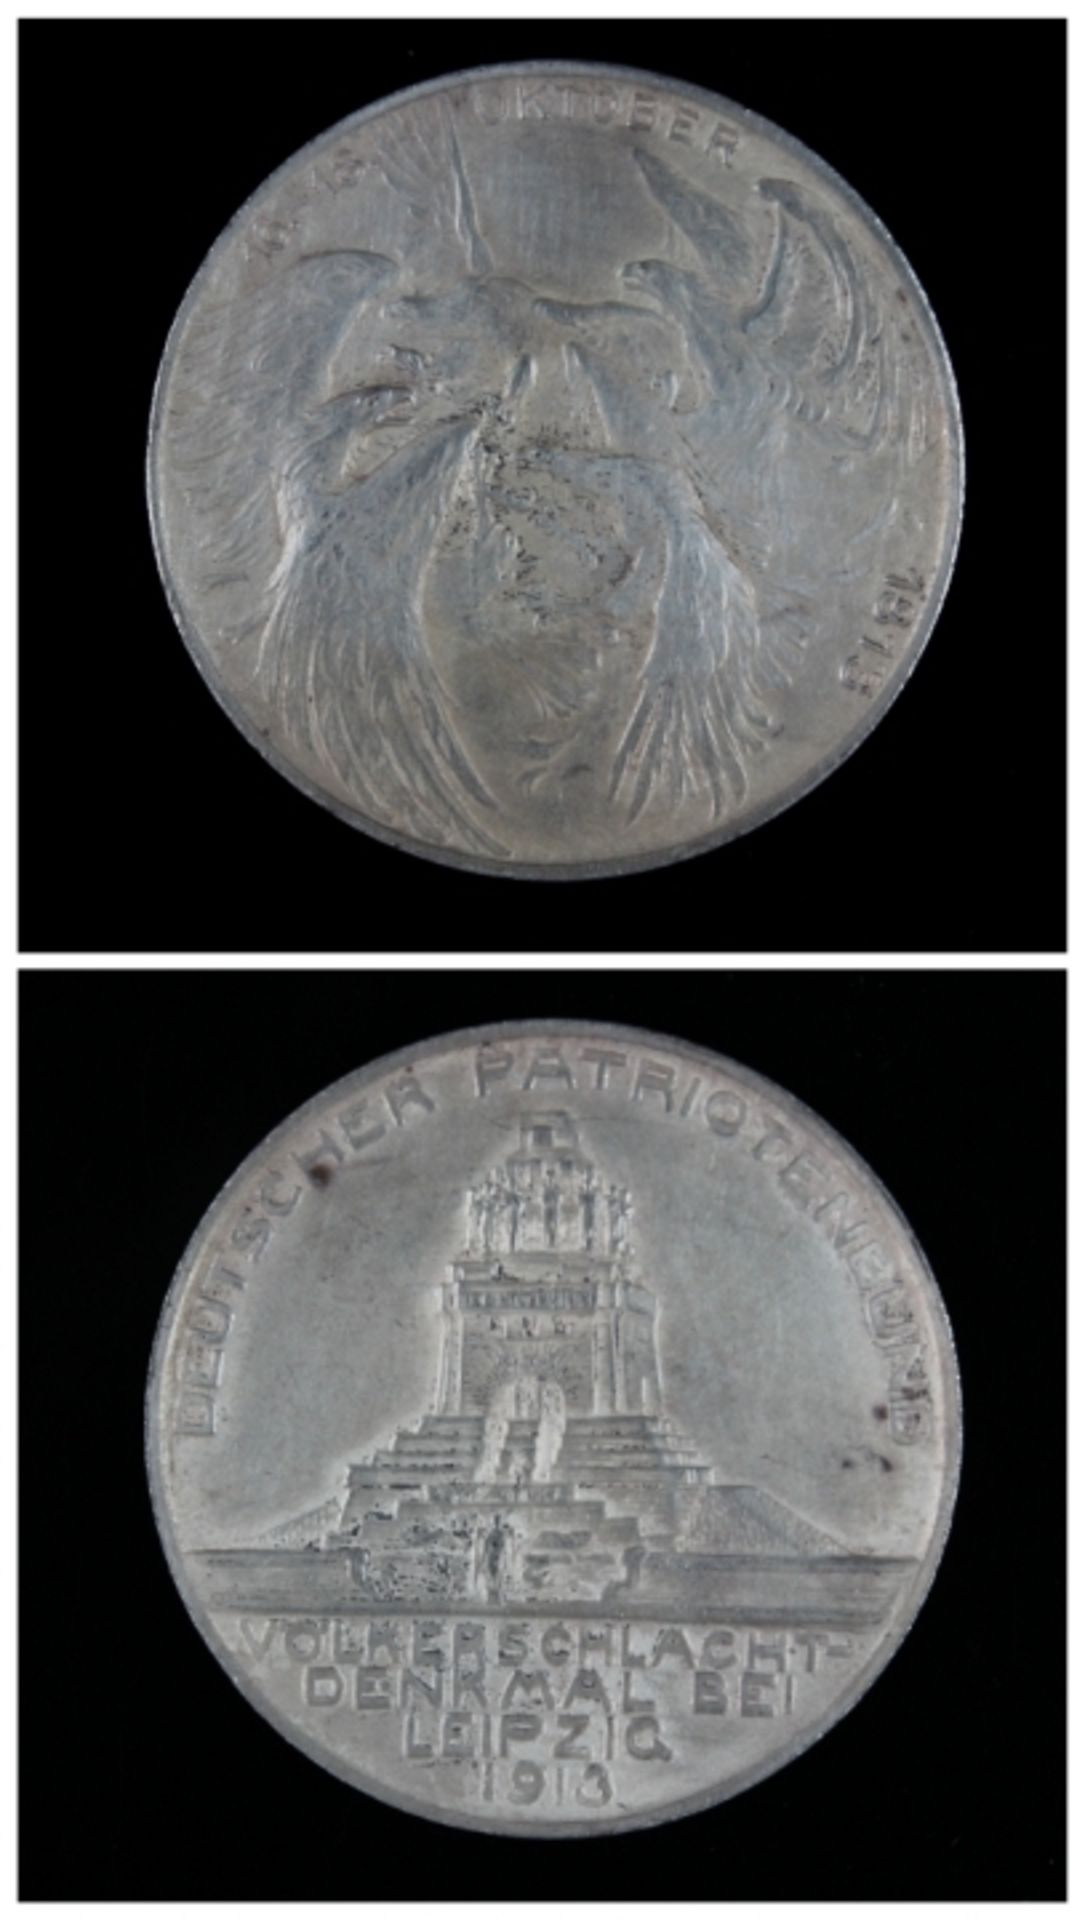 Silbermedaille 1913, Deutsches Reich, Deutscher Patriotenbund, Abb: Völkerschlachtdenkmal bei